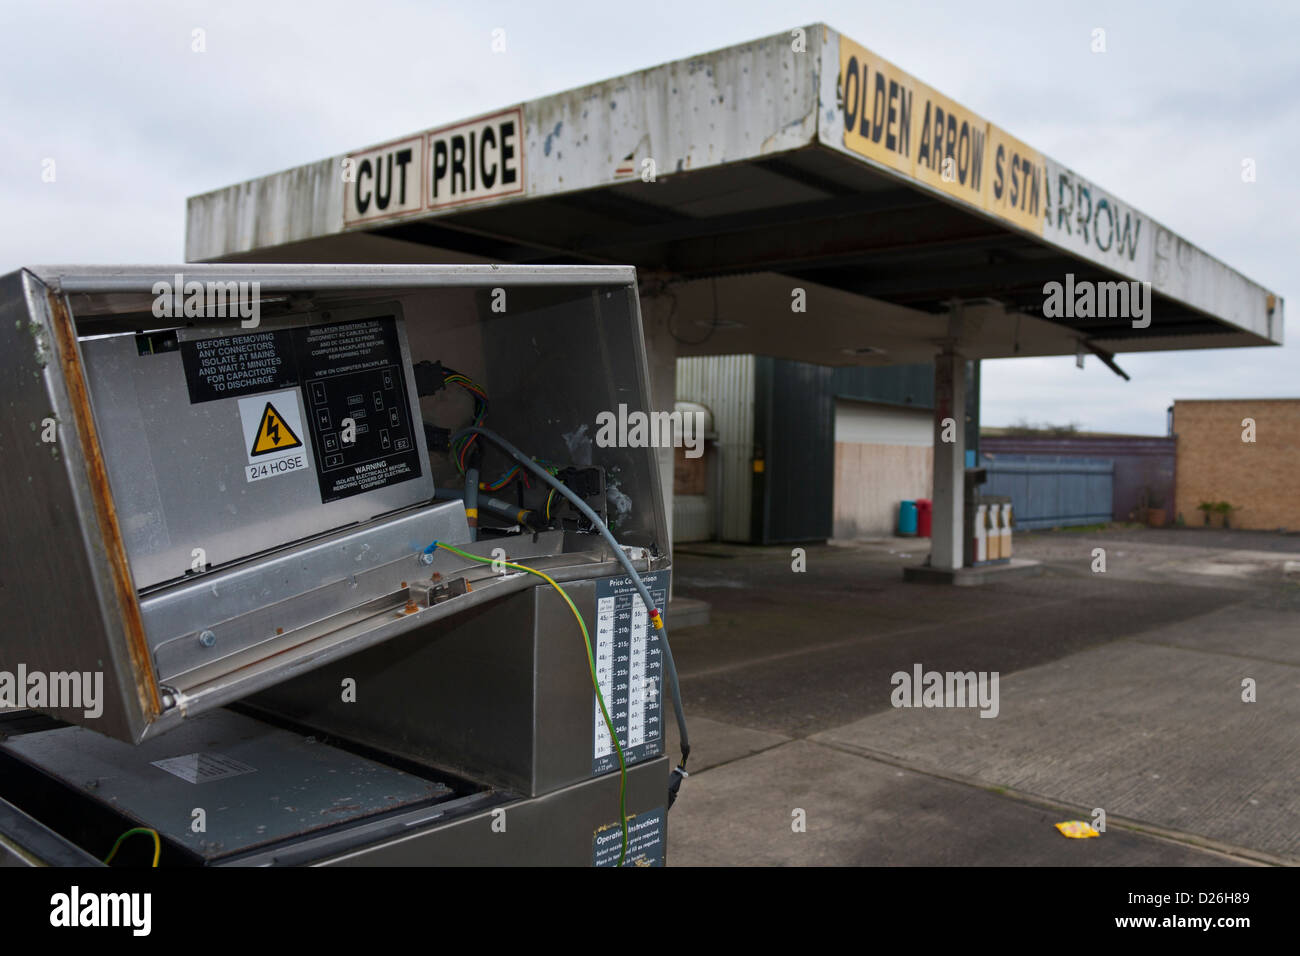 Dettaglio della rottura della pompa benzina in abbandonato, abbandonata la stazione di riempimento, chiuso per il business. Foto Stock